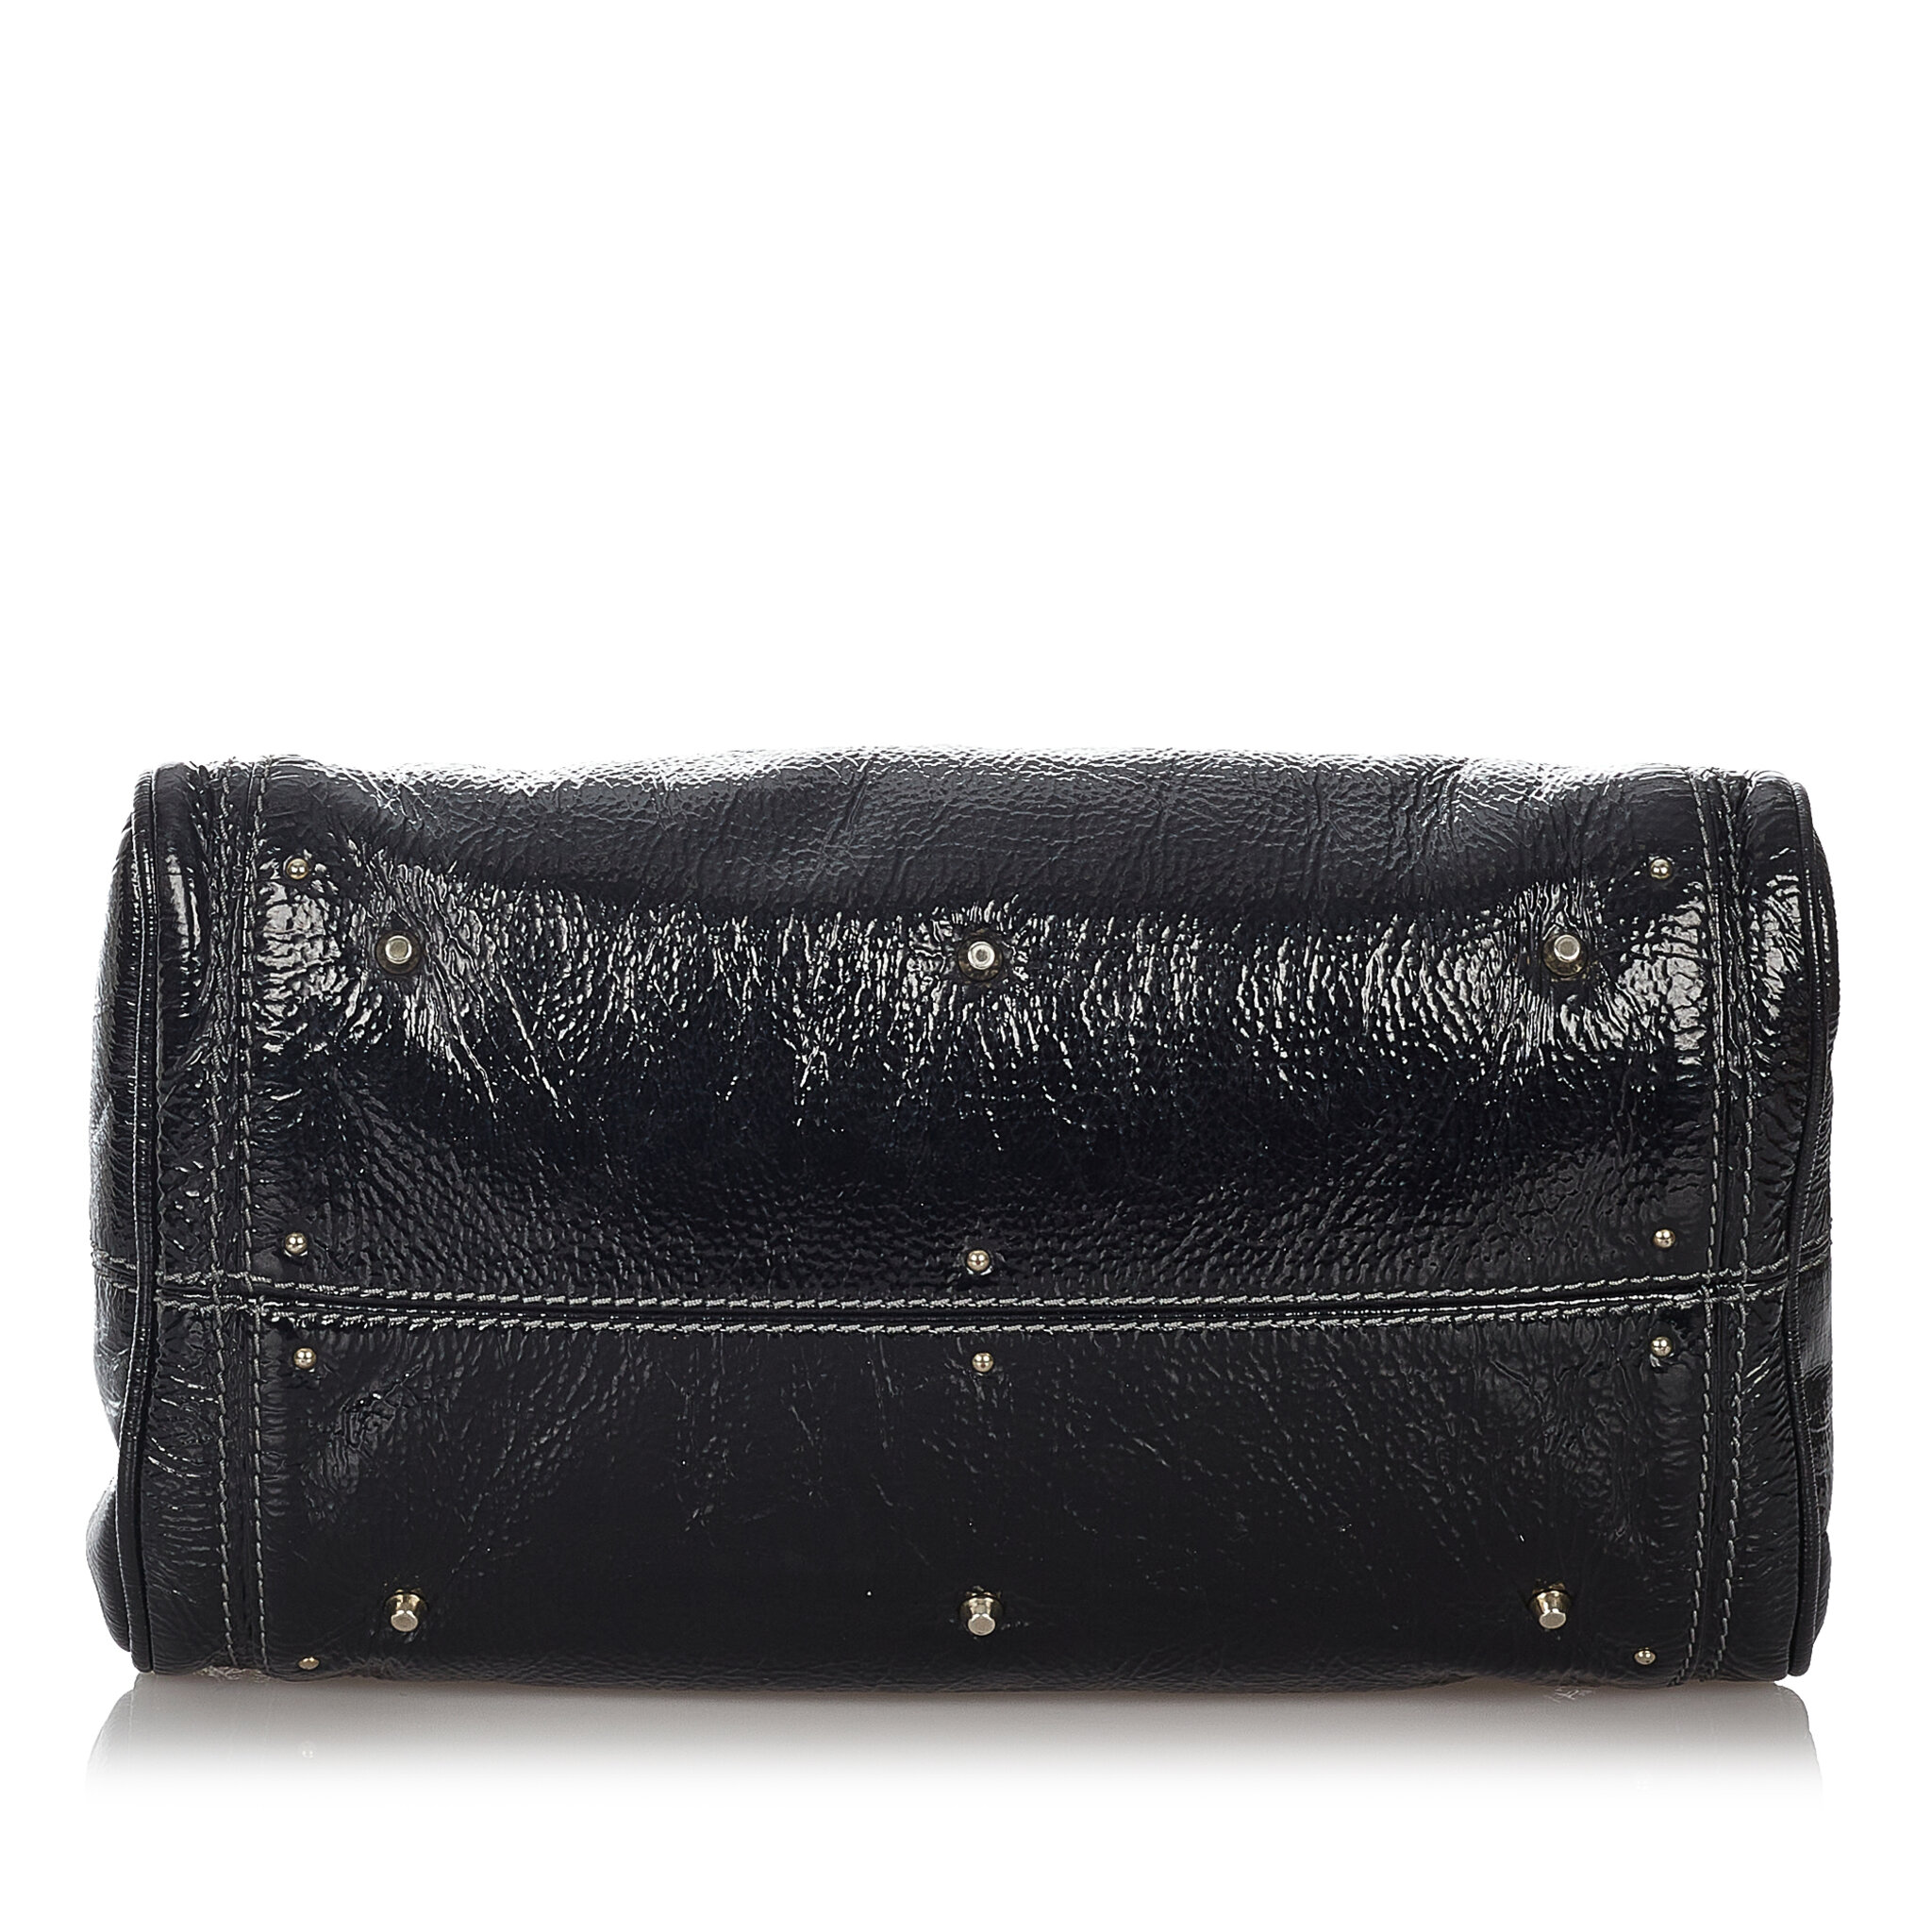 Chloe Paddington Patent Leather Handbag, ONESIZE, black